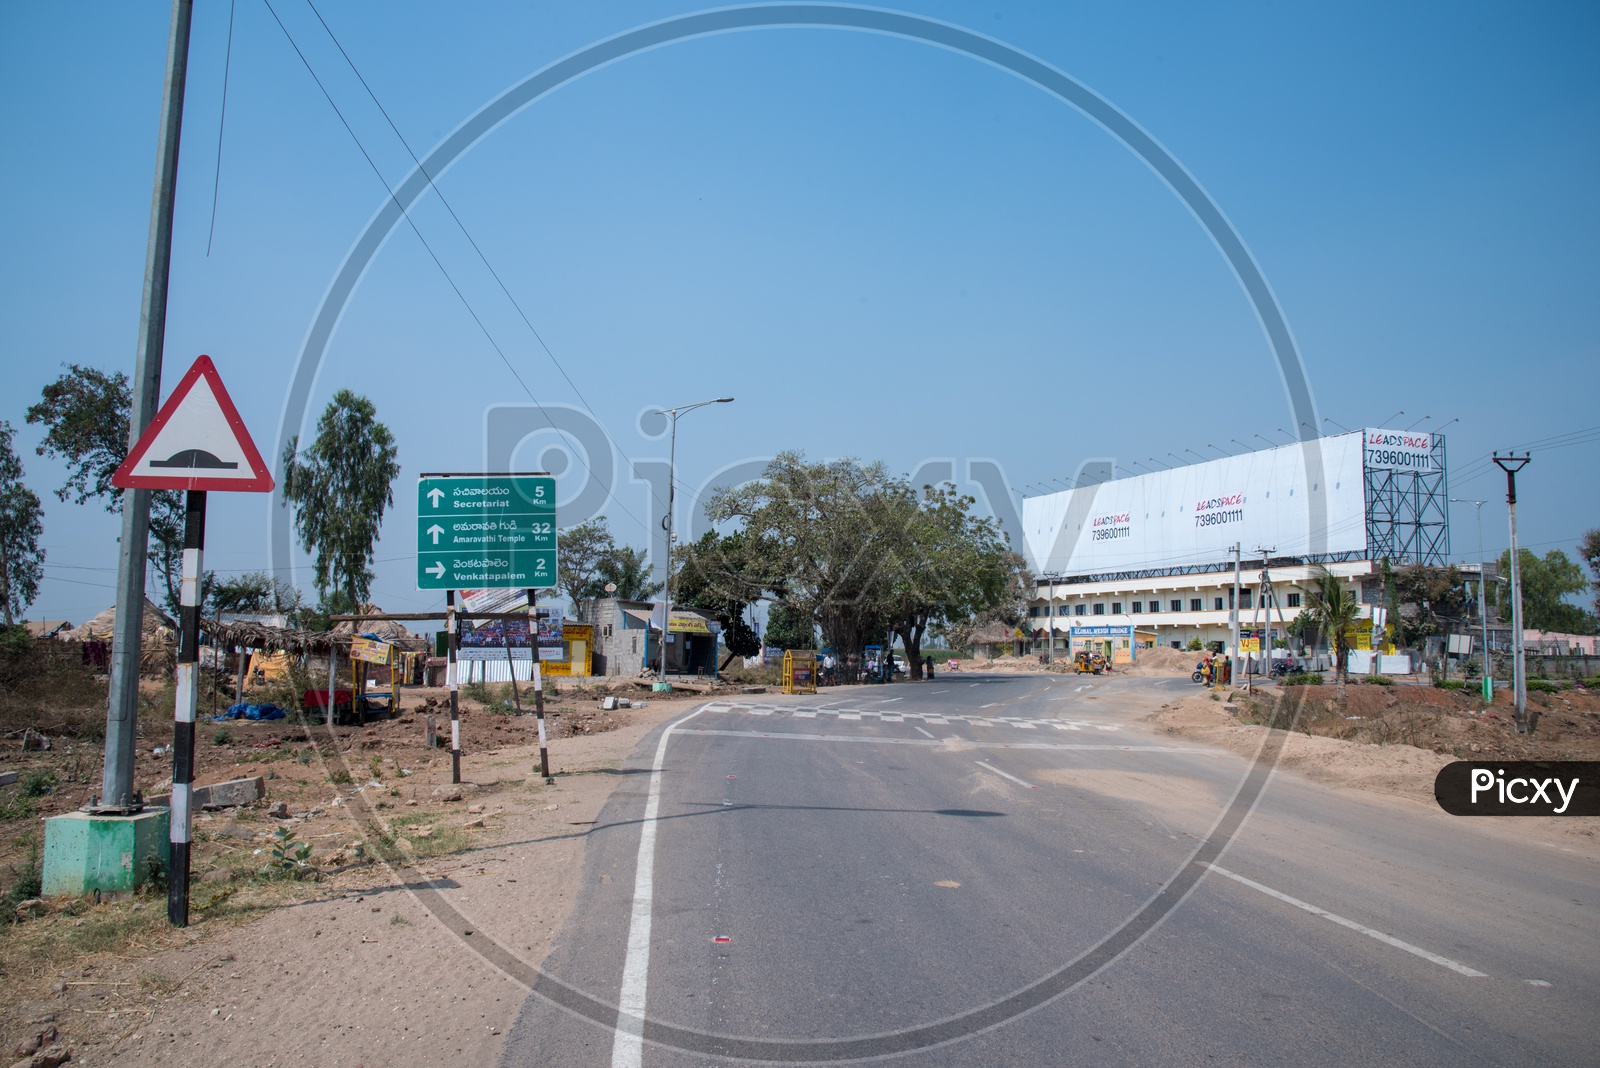 Mandadam-Venkatapalem-Krishnayapalem junction